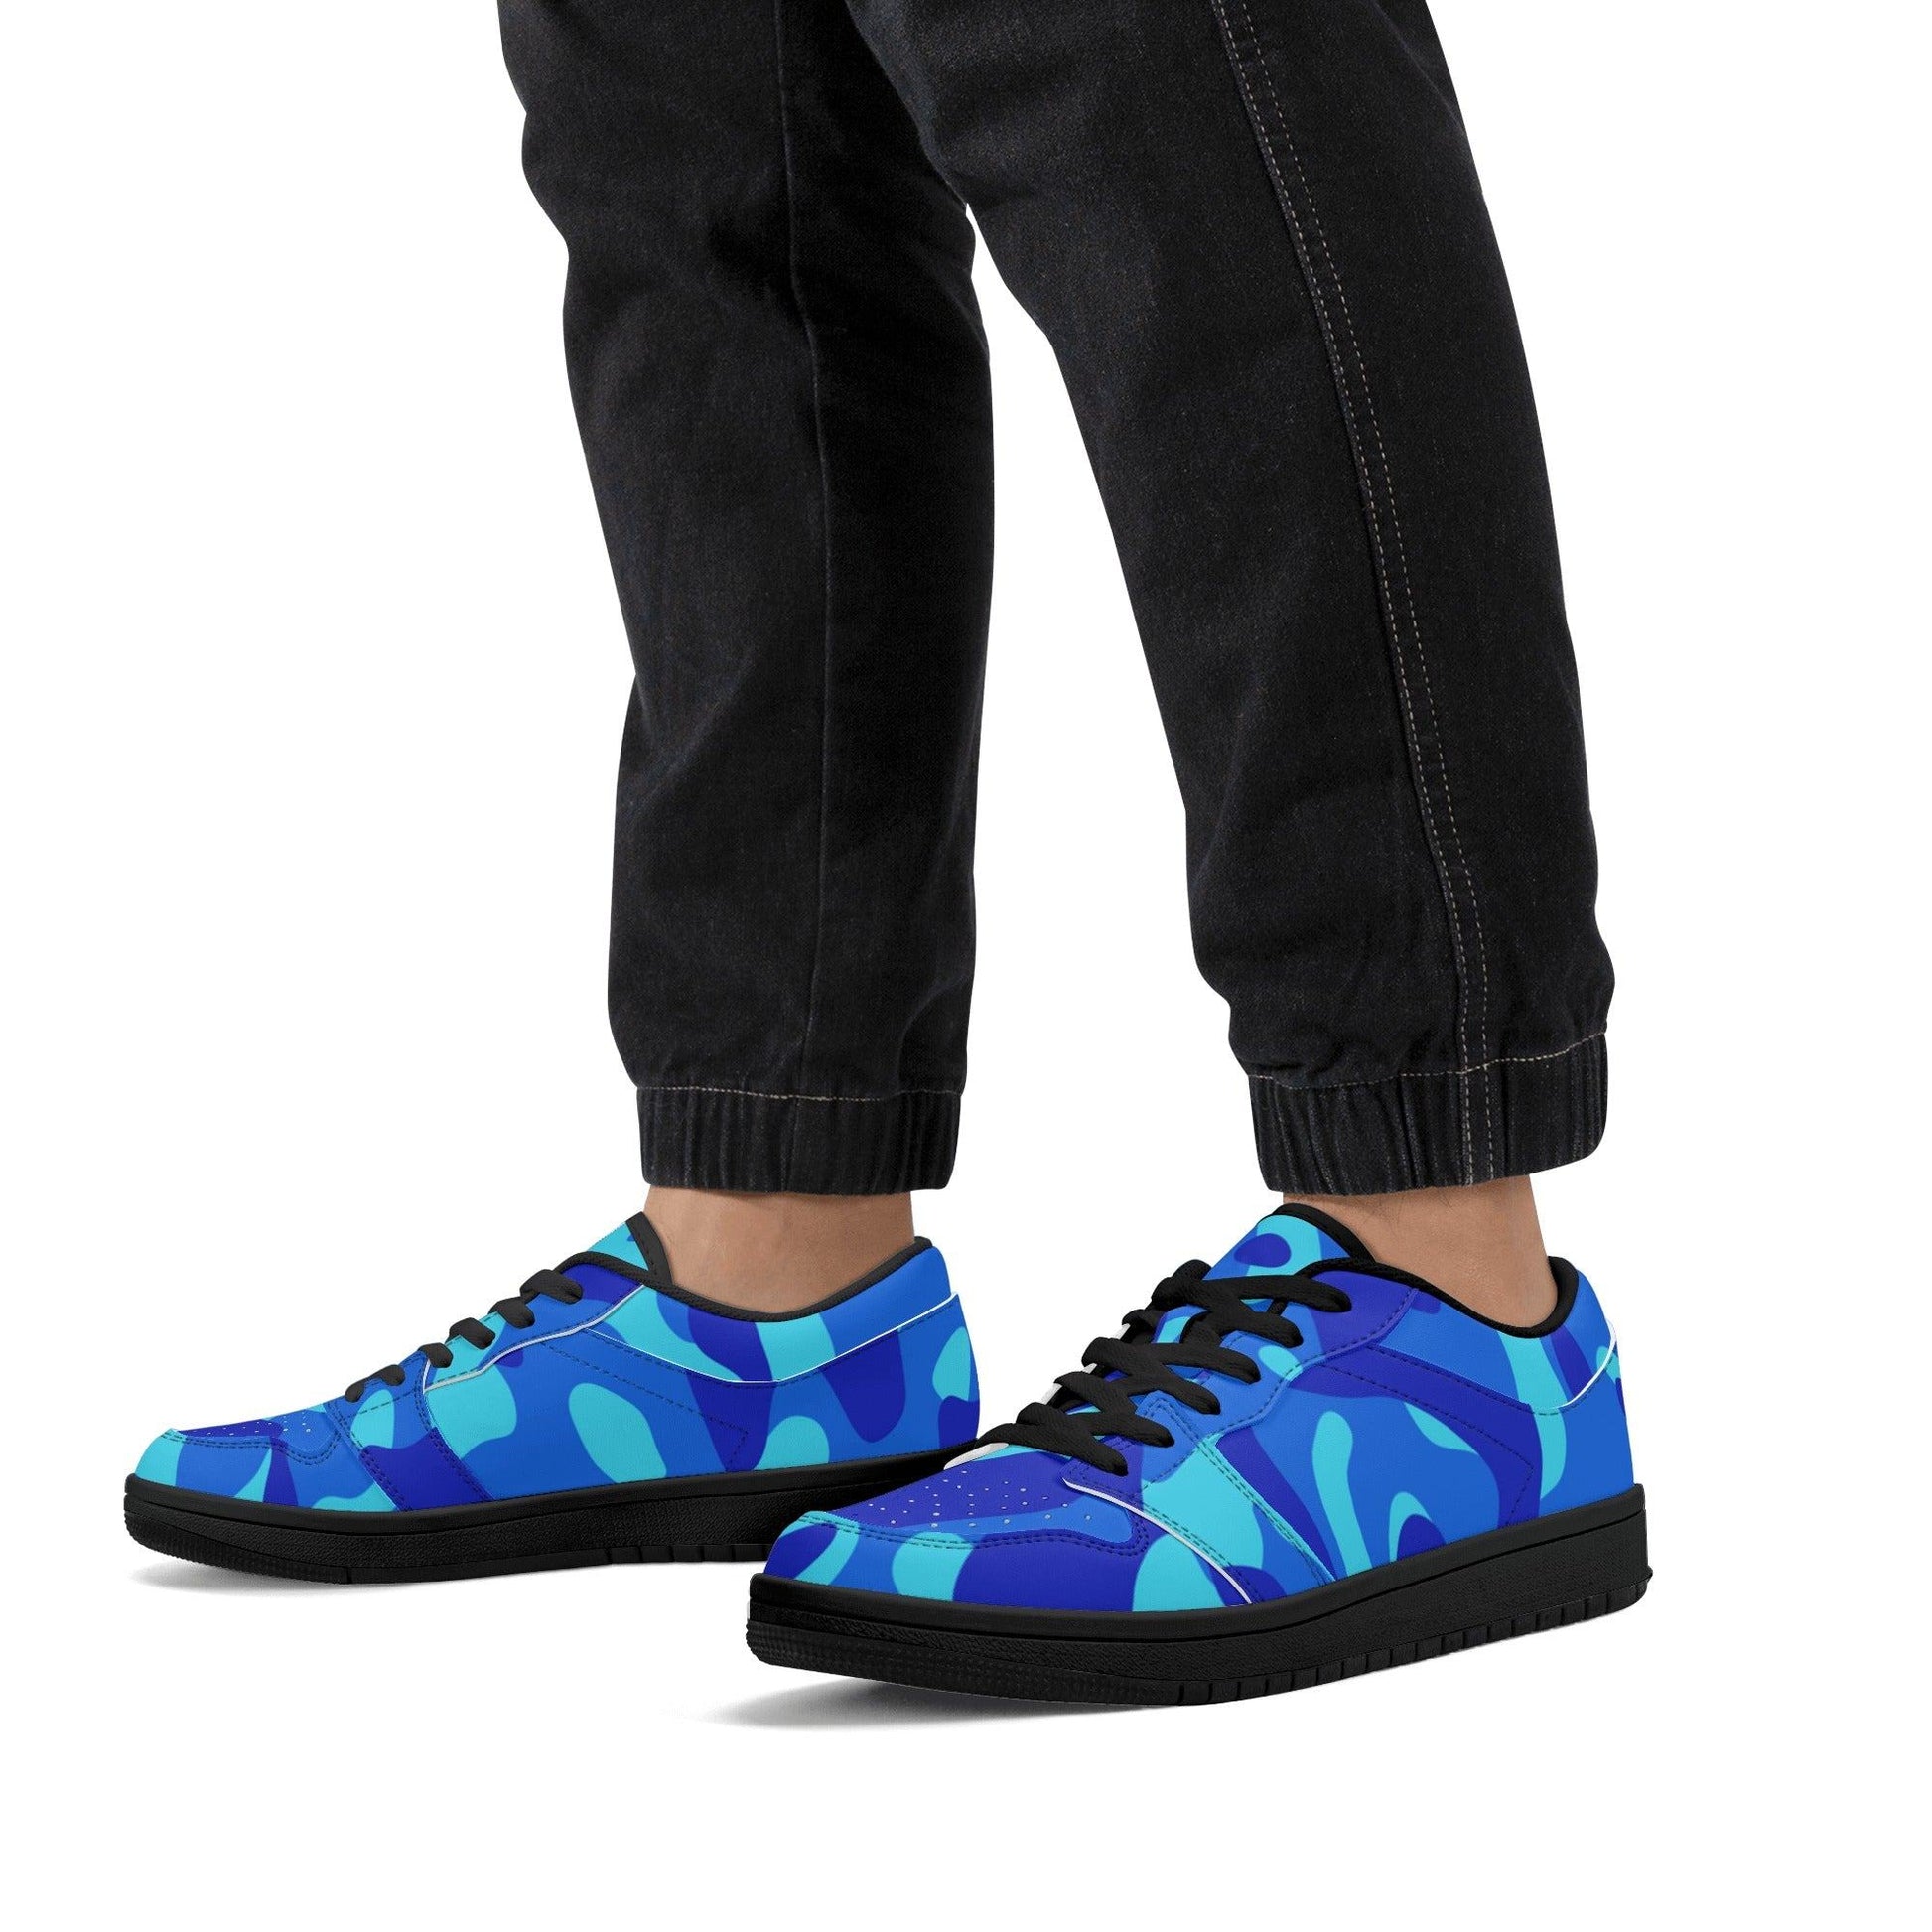 Blue Camouflage Low Top Sneaker für Herren Low Top Sneaker 79.99 JLR Design